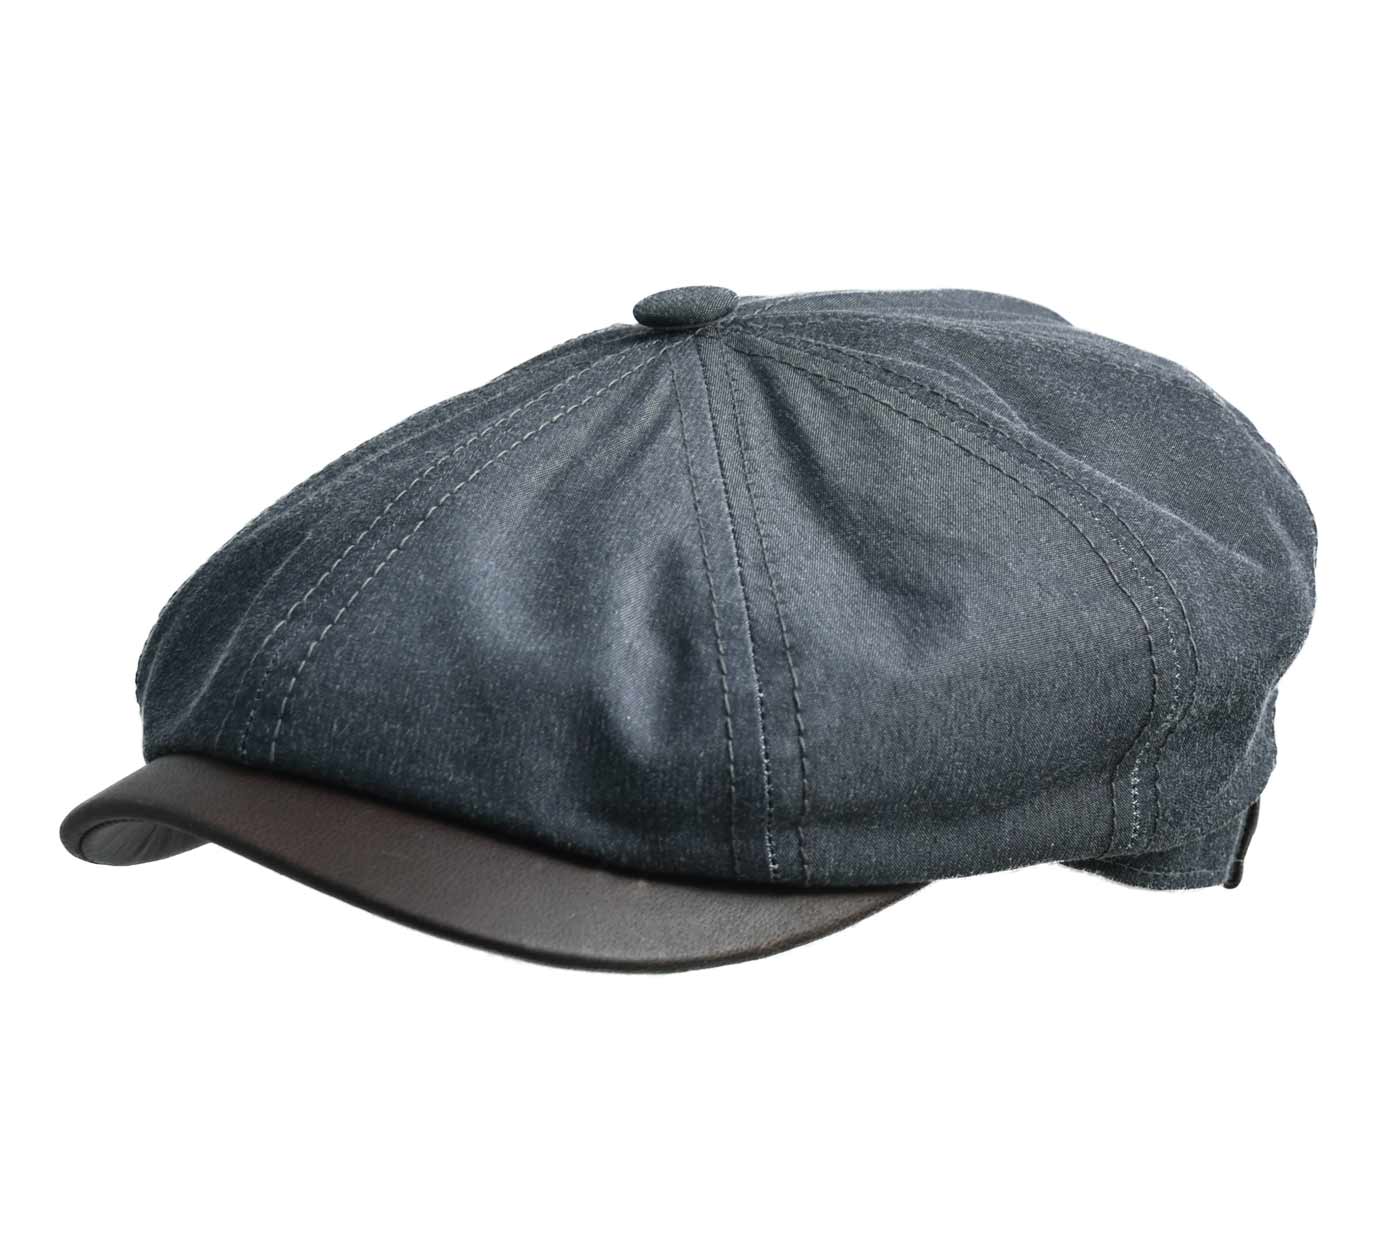 stetson hatteras waxed cotton newsboy cap 1175d1